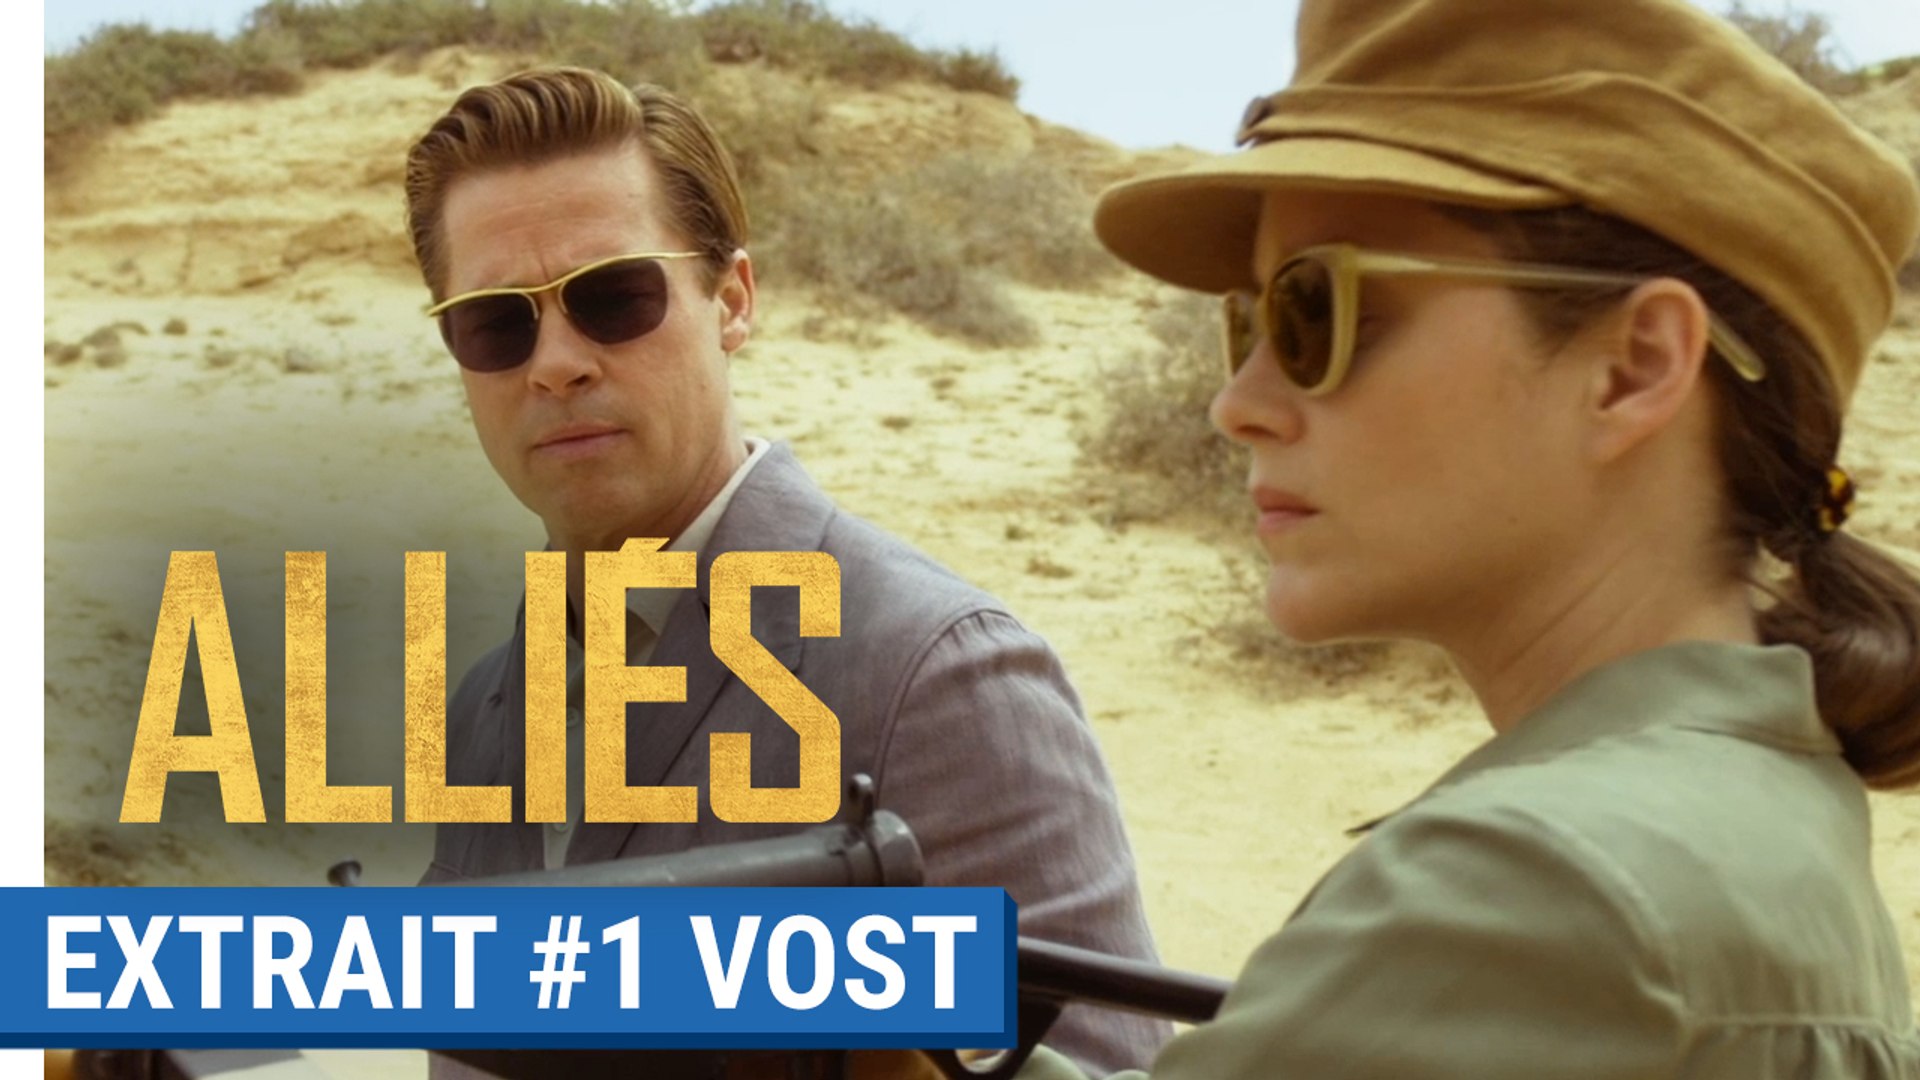 ALLIÉS - Extrait #1 : Entraînement au tir avec Brad Pitt & Marion Cotillard  (VOST) - Vidéo Dailymotion